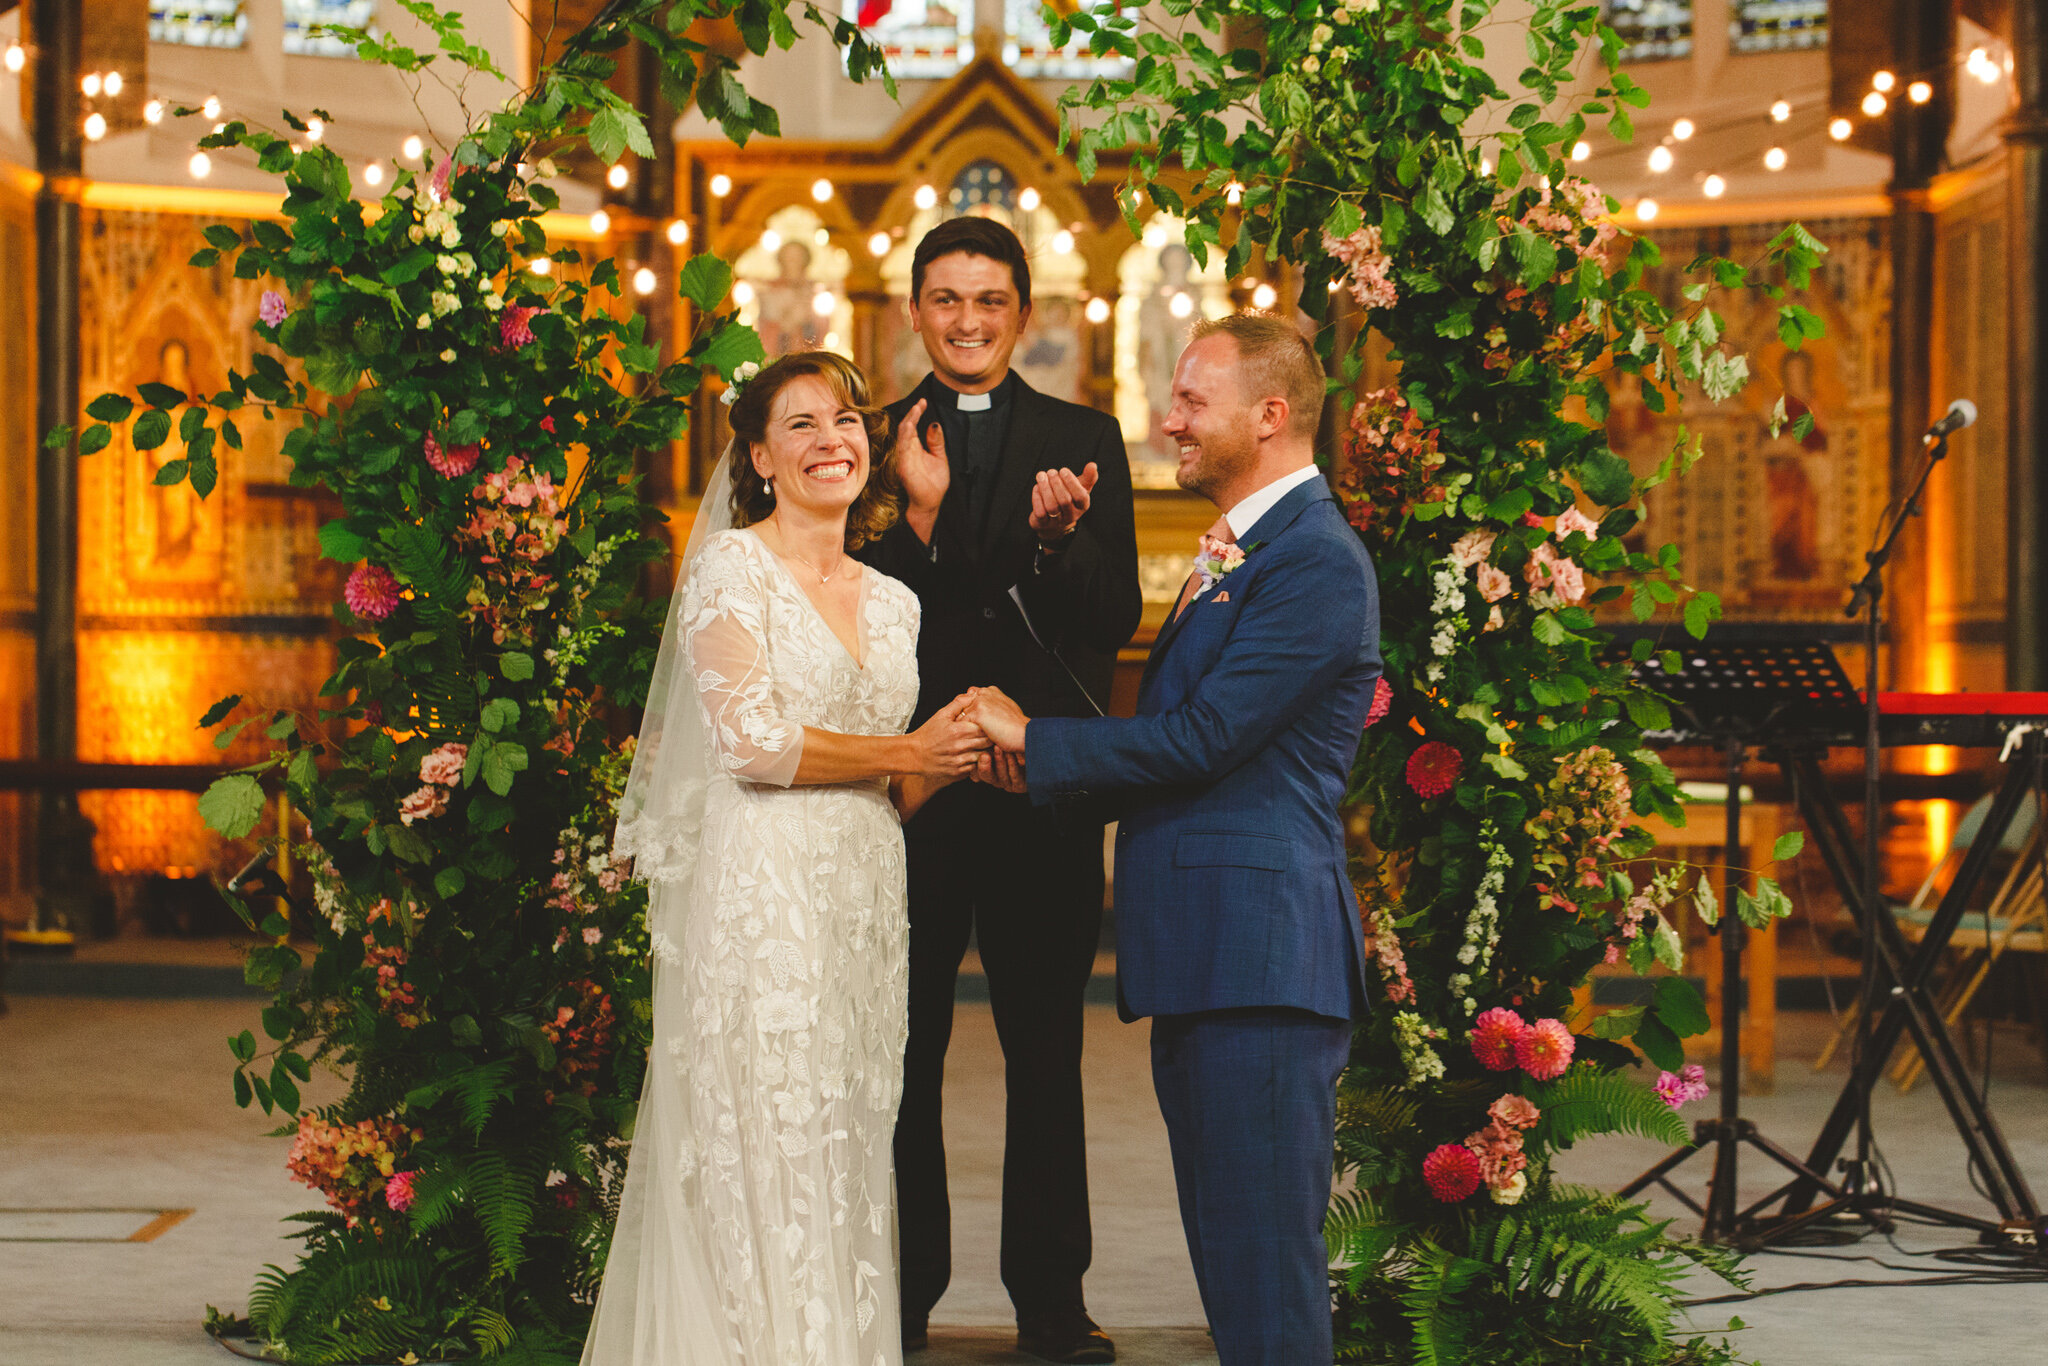 derbyshire-wedding-elopement-photographer-best-2020-106.jpg